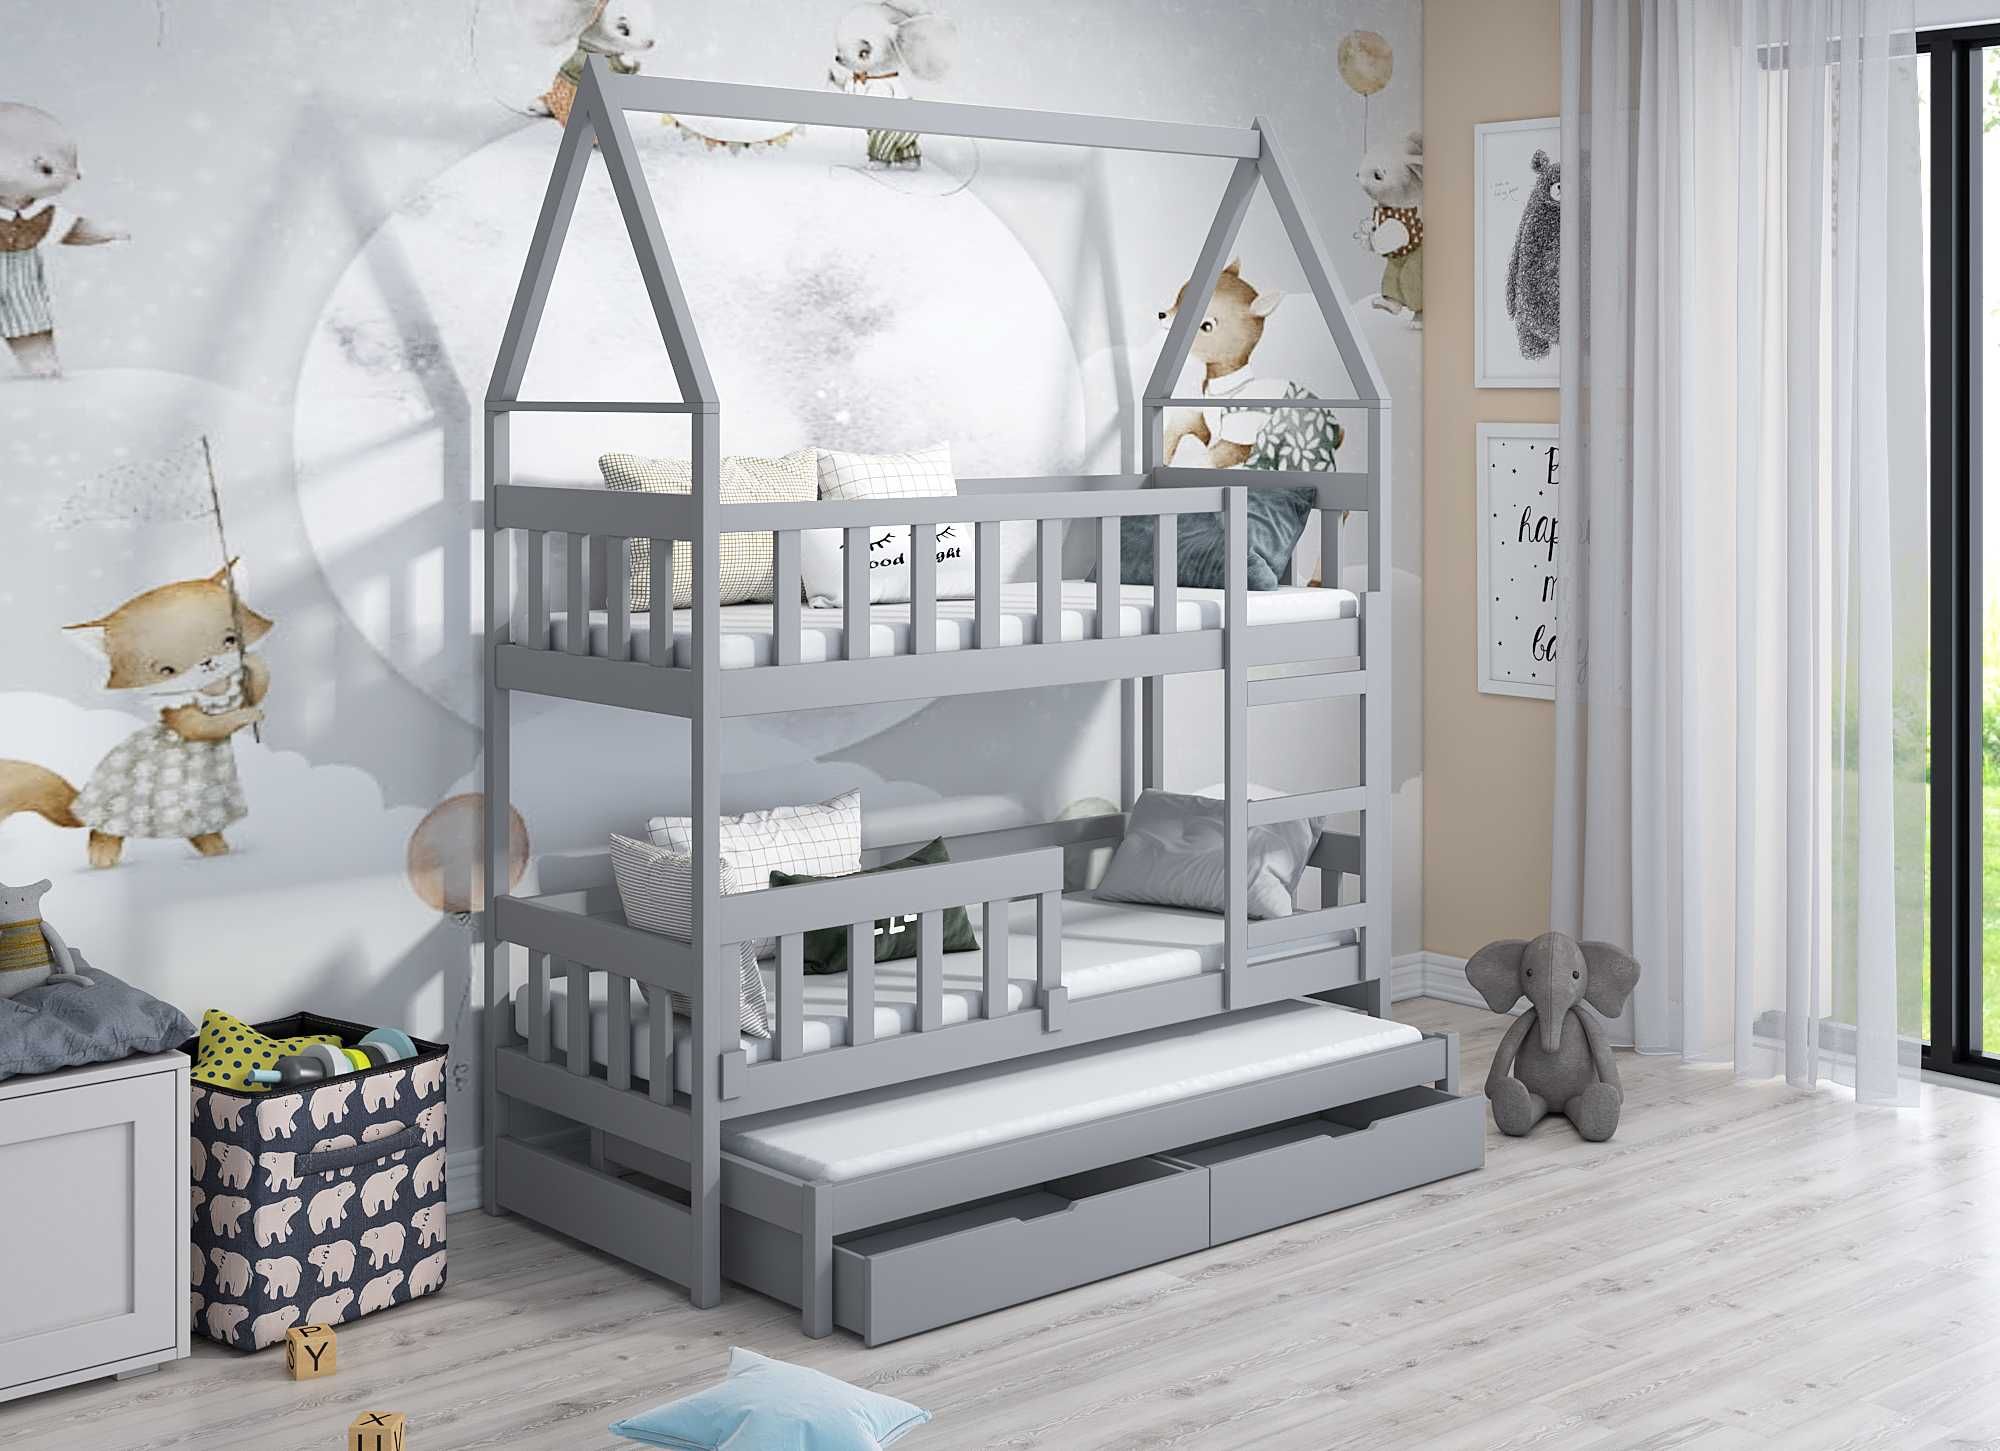 Łóżko piętrowe 3 osobowe dla dzieci DOMEK, materace 160x75 / 180x75